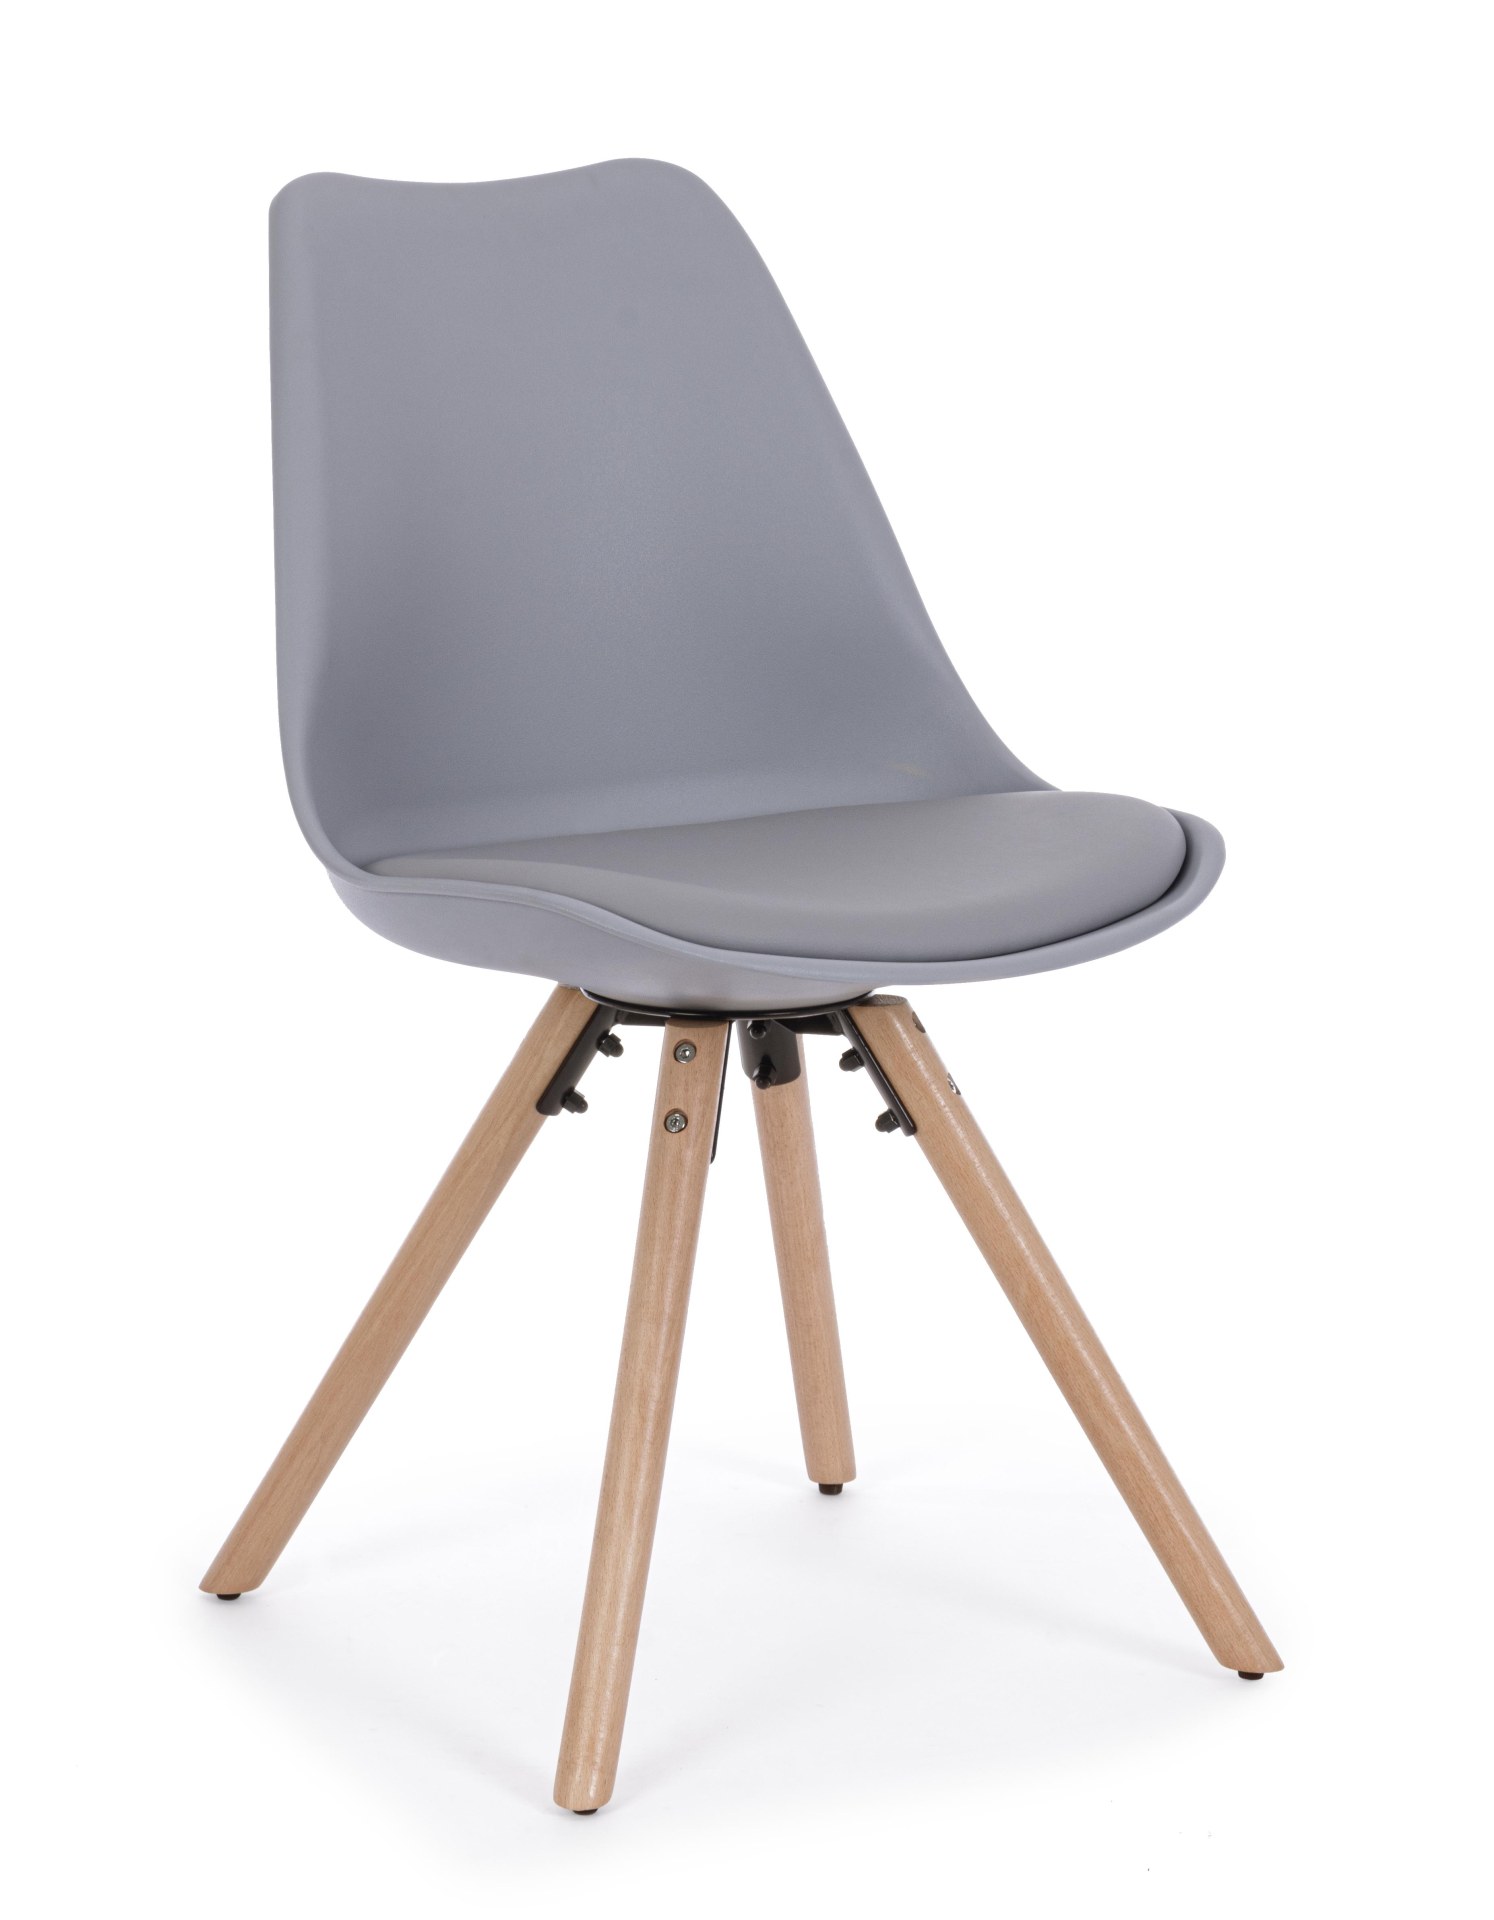 Der Stuhl New Trend überzeugt mit seinem modernem Design. Gefertigt wurde der Stuhl aus Kunststoff, welcher einen grauen Farbton besitzt. Das Gestell ist aus Buchenholz. Die Sitzhöhe des Stuhls ist 49 cm